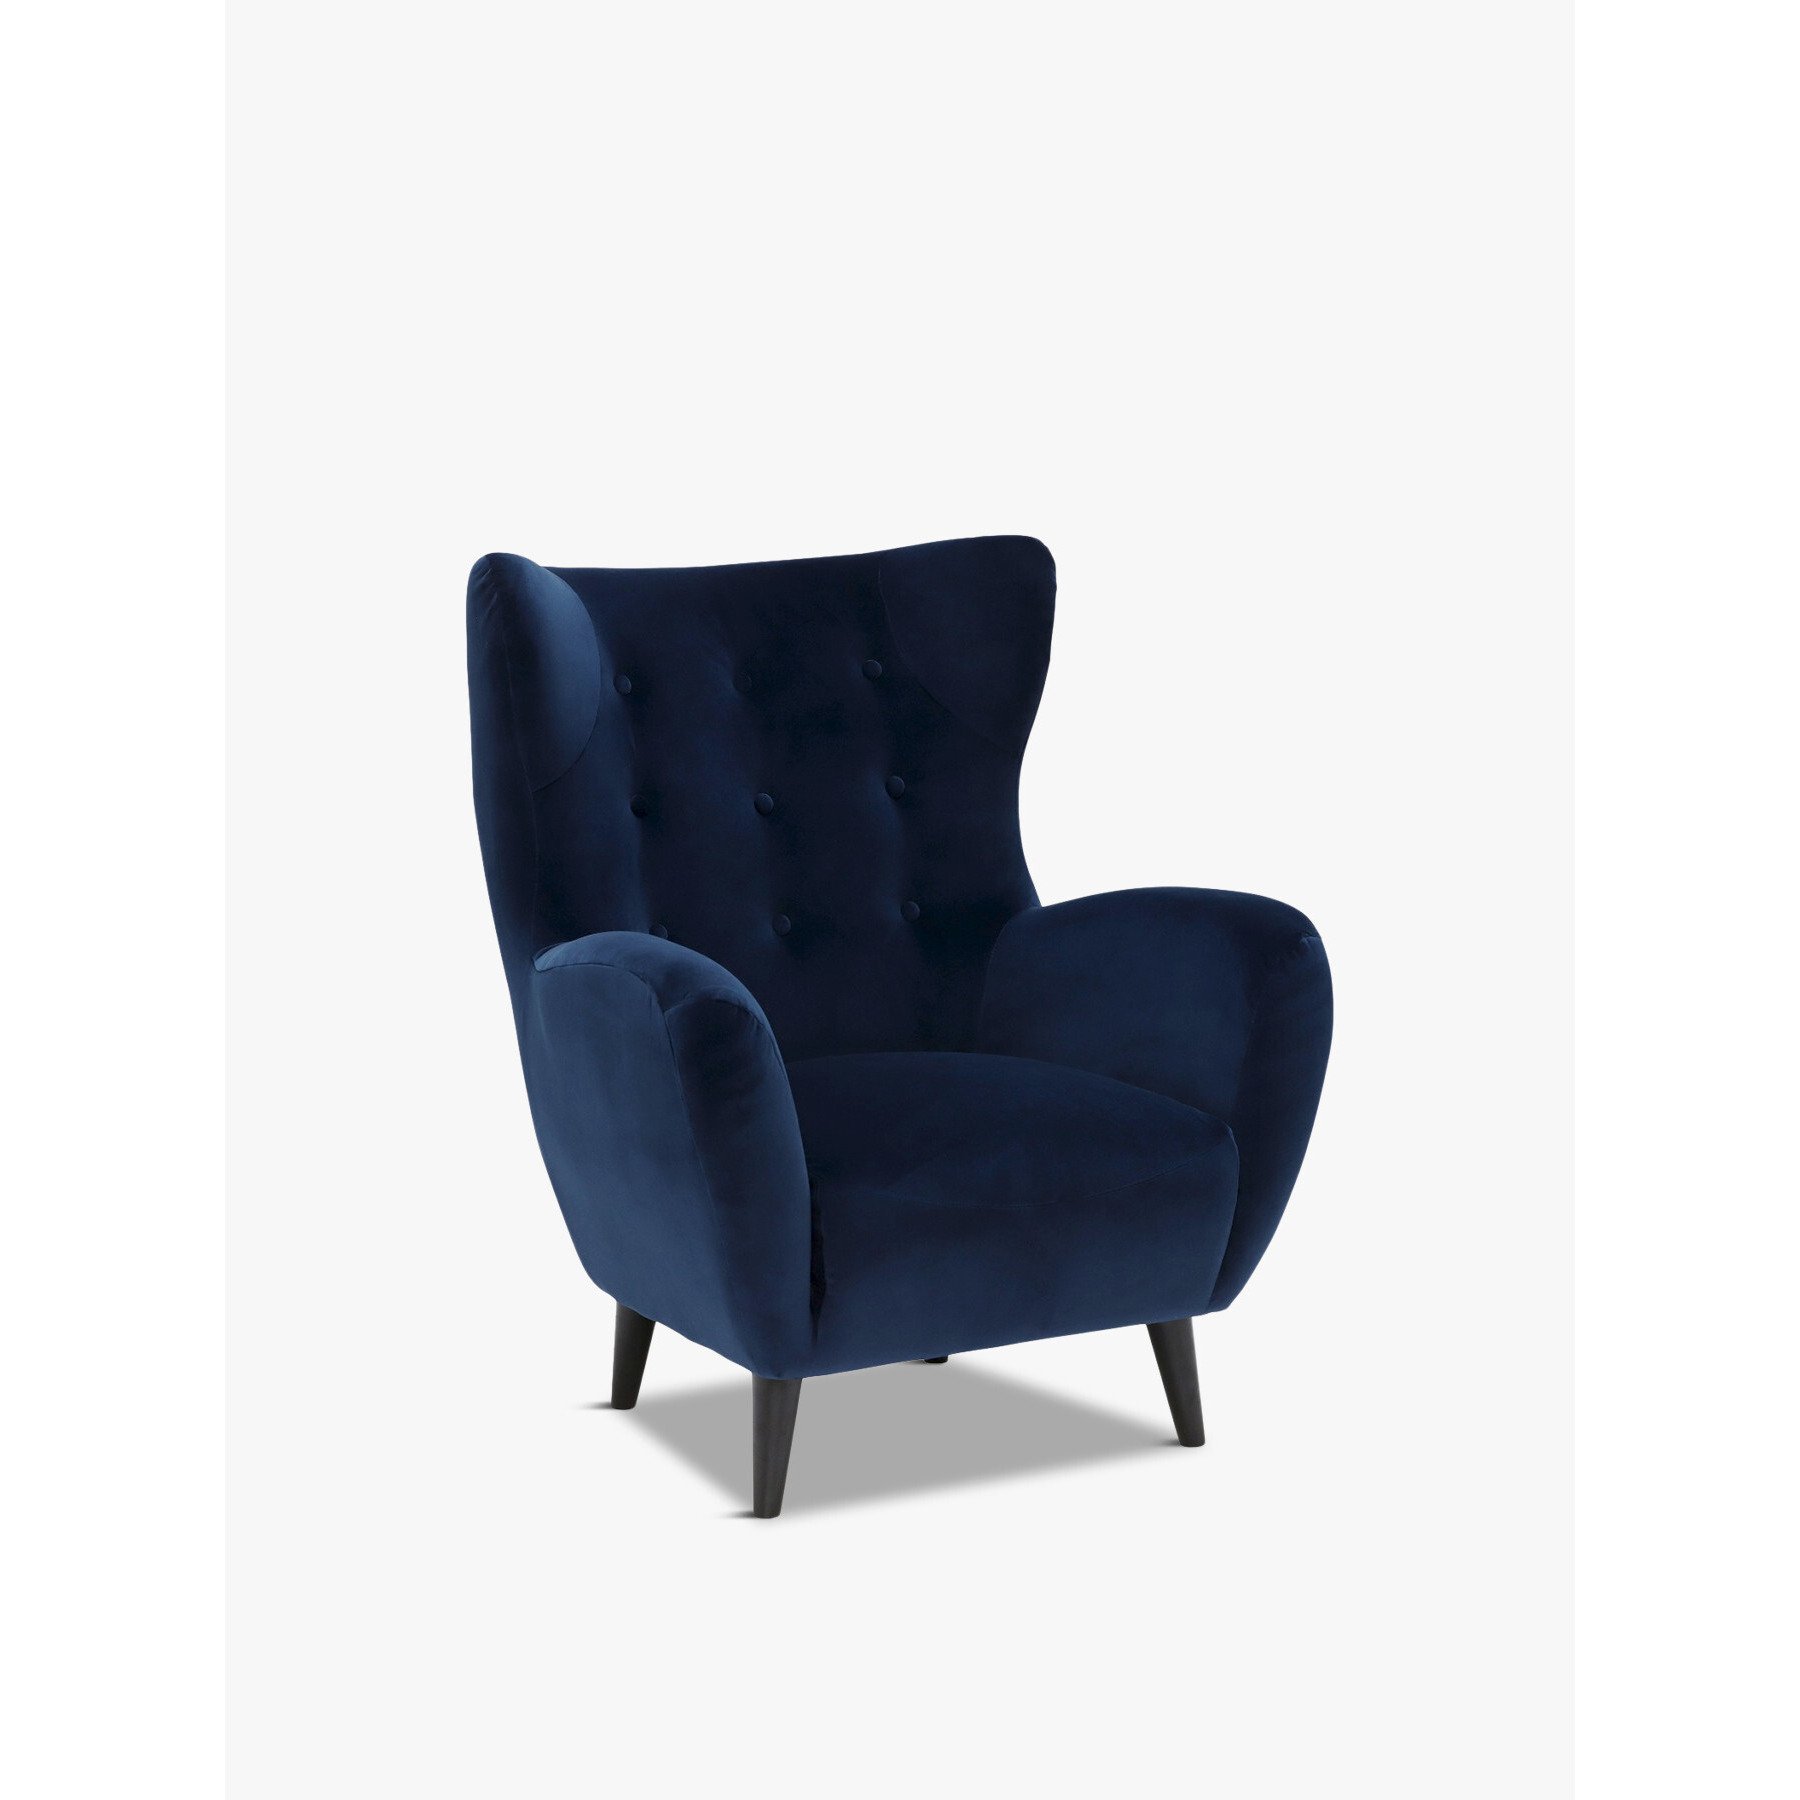 Barker and Stonehouse Delon Velvet Chair, Navy Blue - image 1